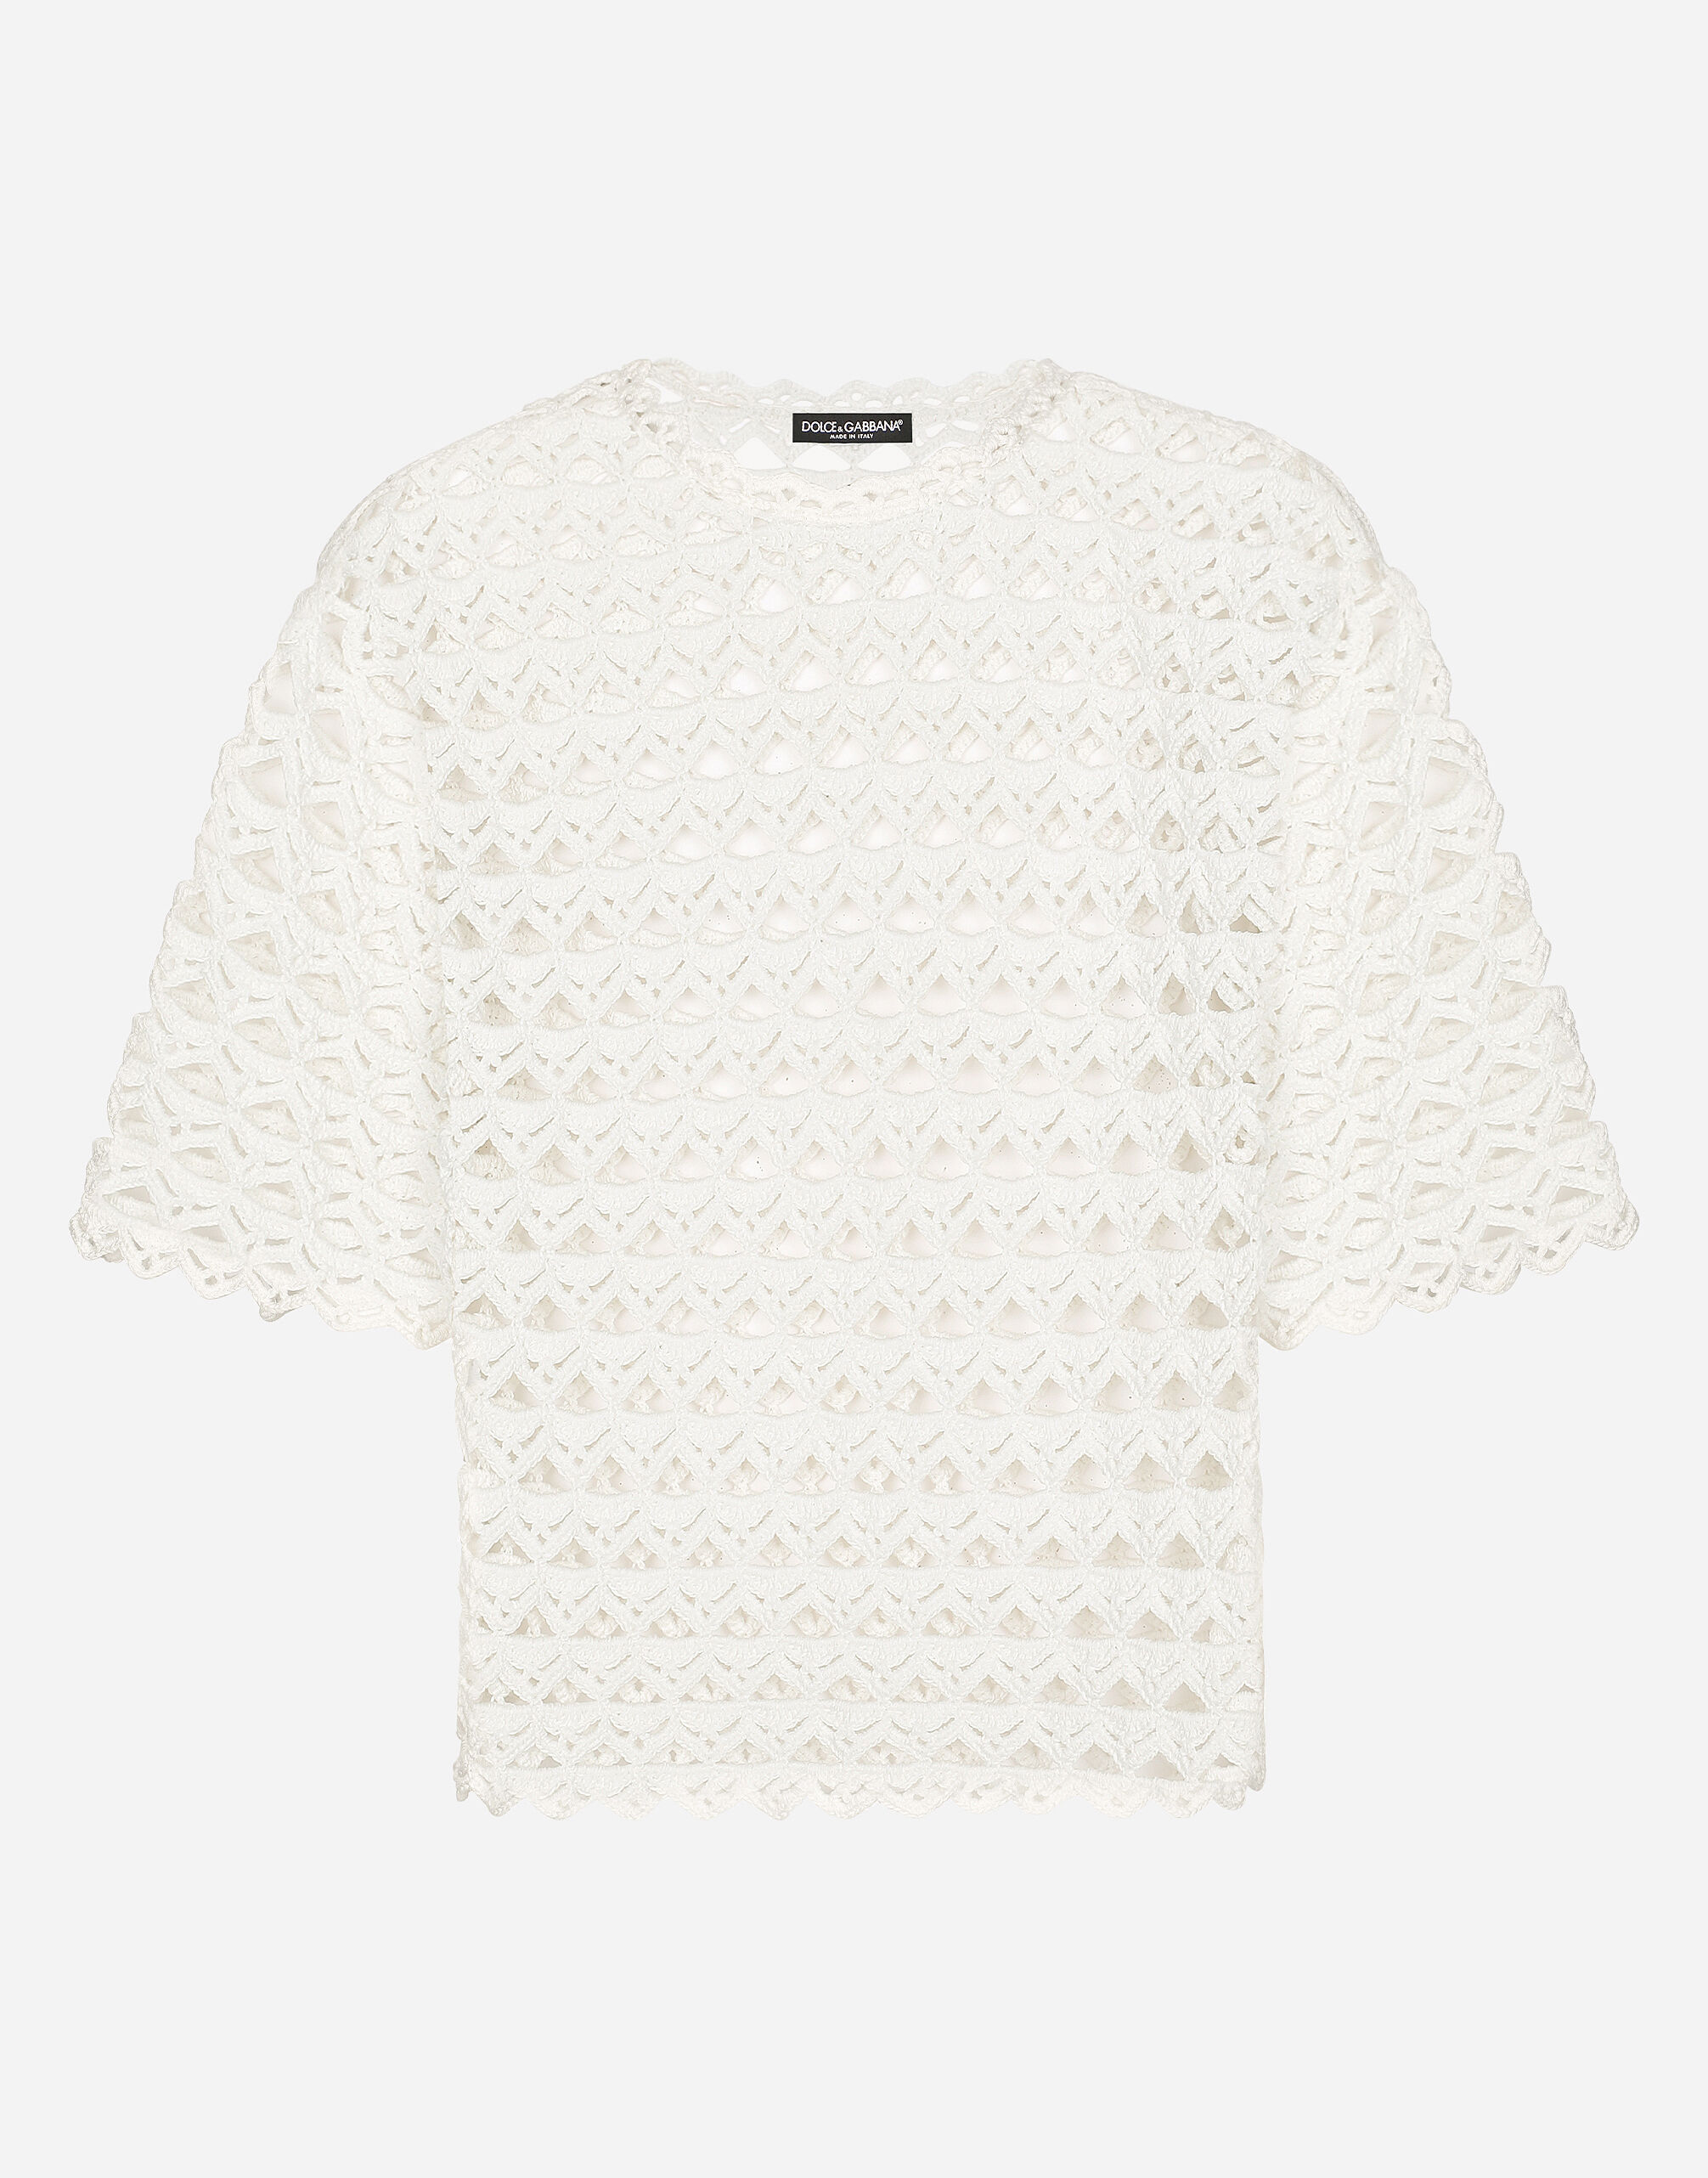 Dolce & Gabbana Cotton round-neck sweater White GXX46TJBSIO